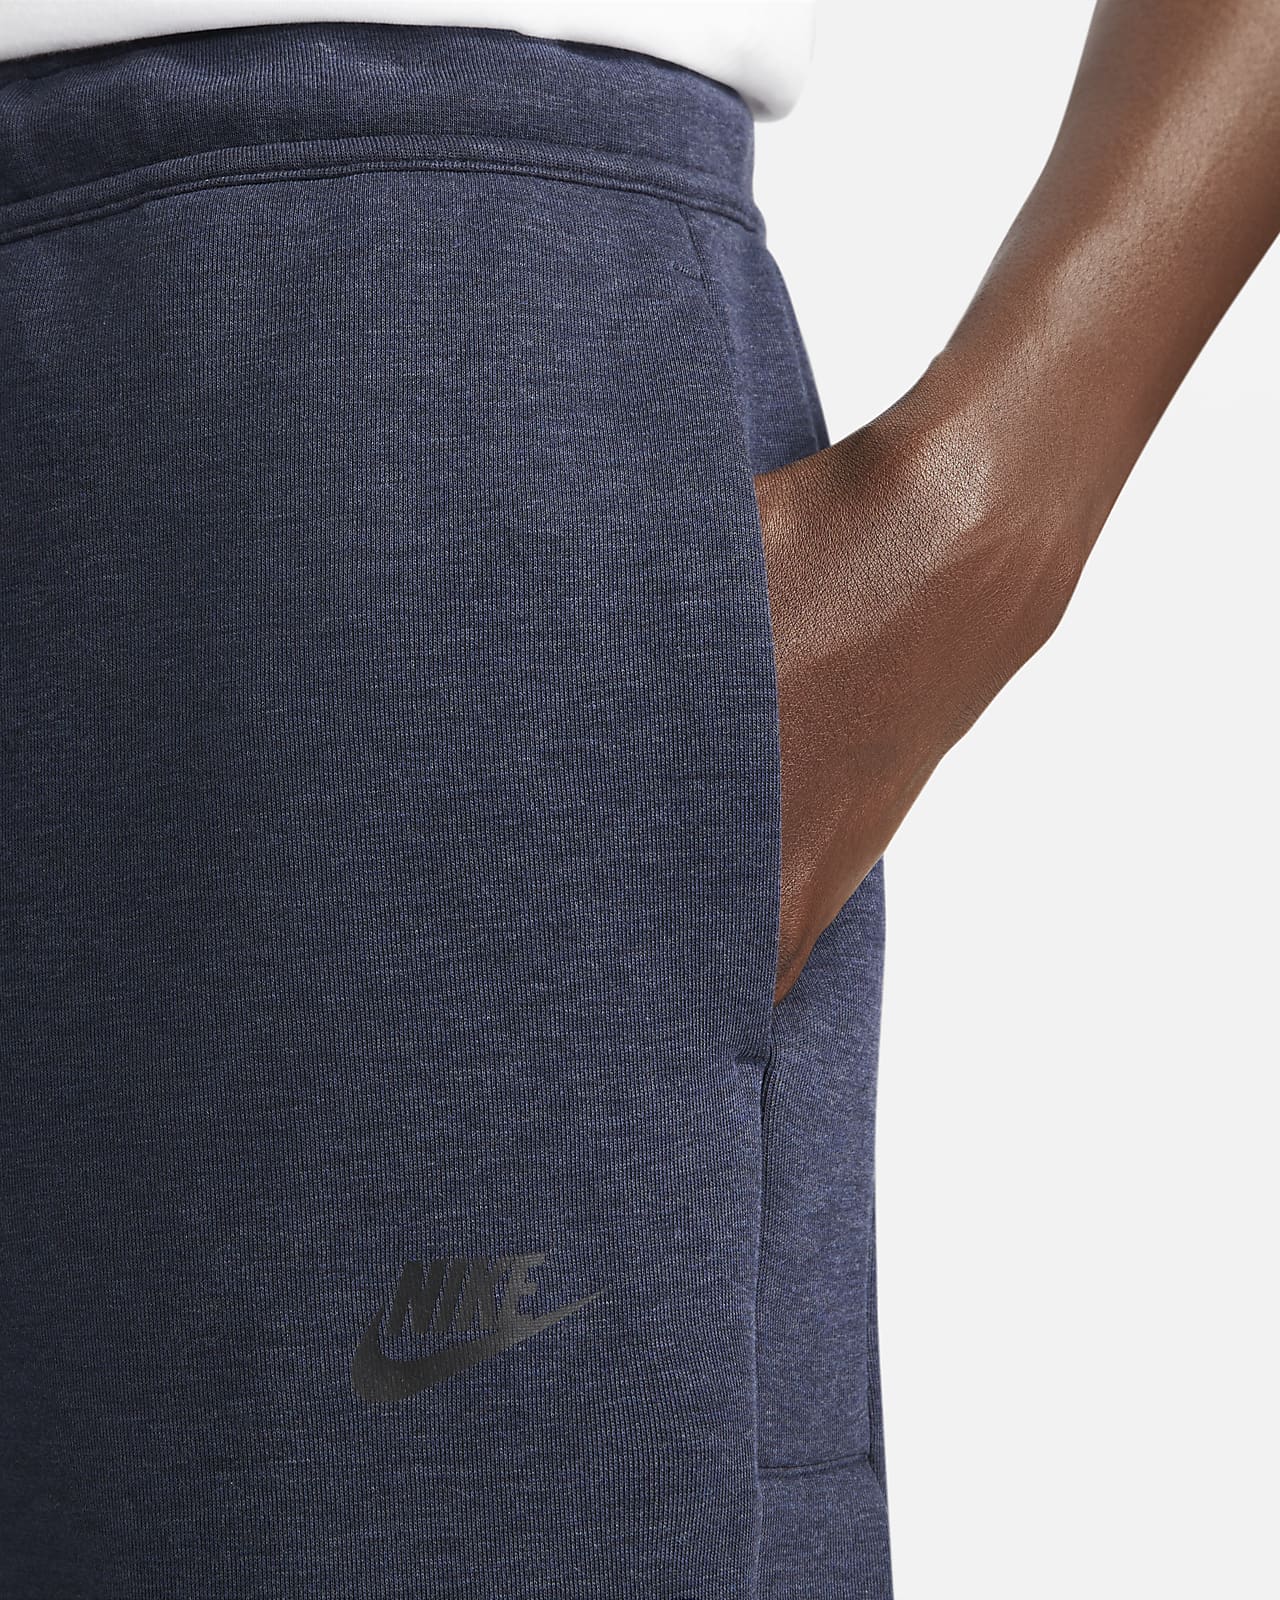 Ansichtkaart microscoop etiquette Nike Sportswear Tech Fleece Men's Loose Fit Tear-Away Pants. Nike.com